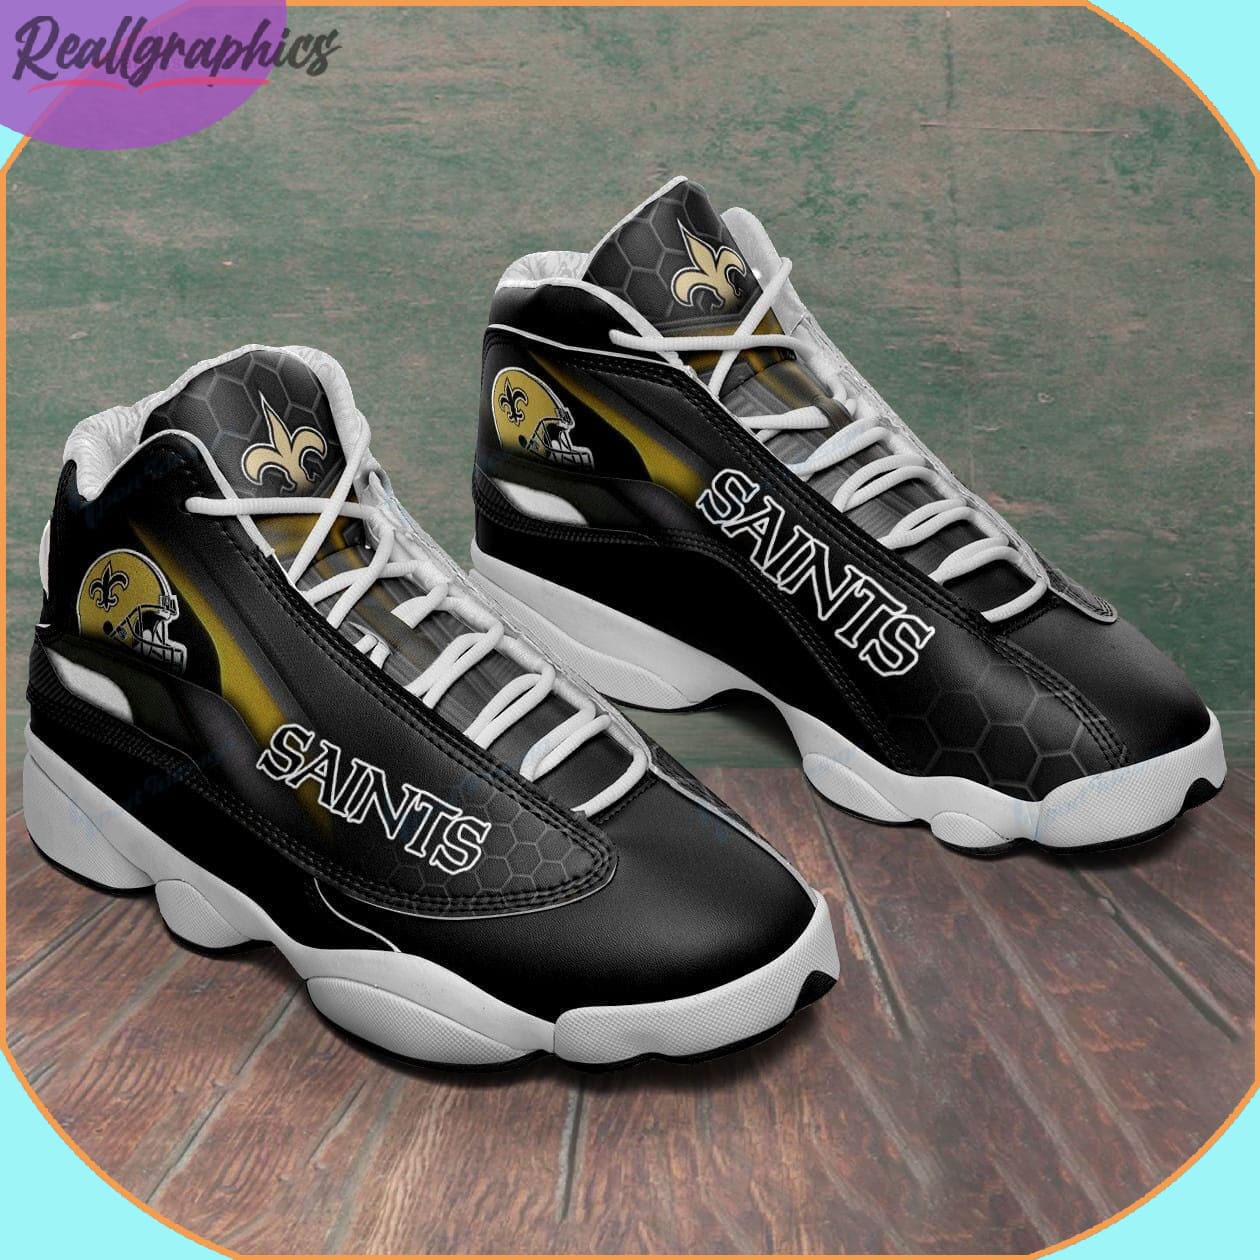 New Orleans Saints AJordan 13 Sneaker, NFL Shoes